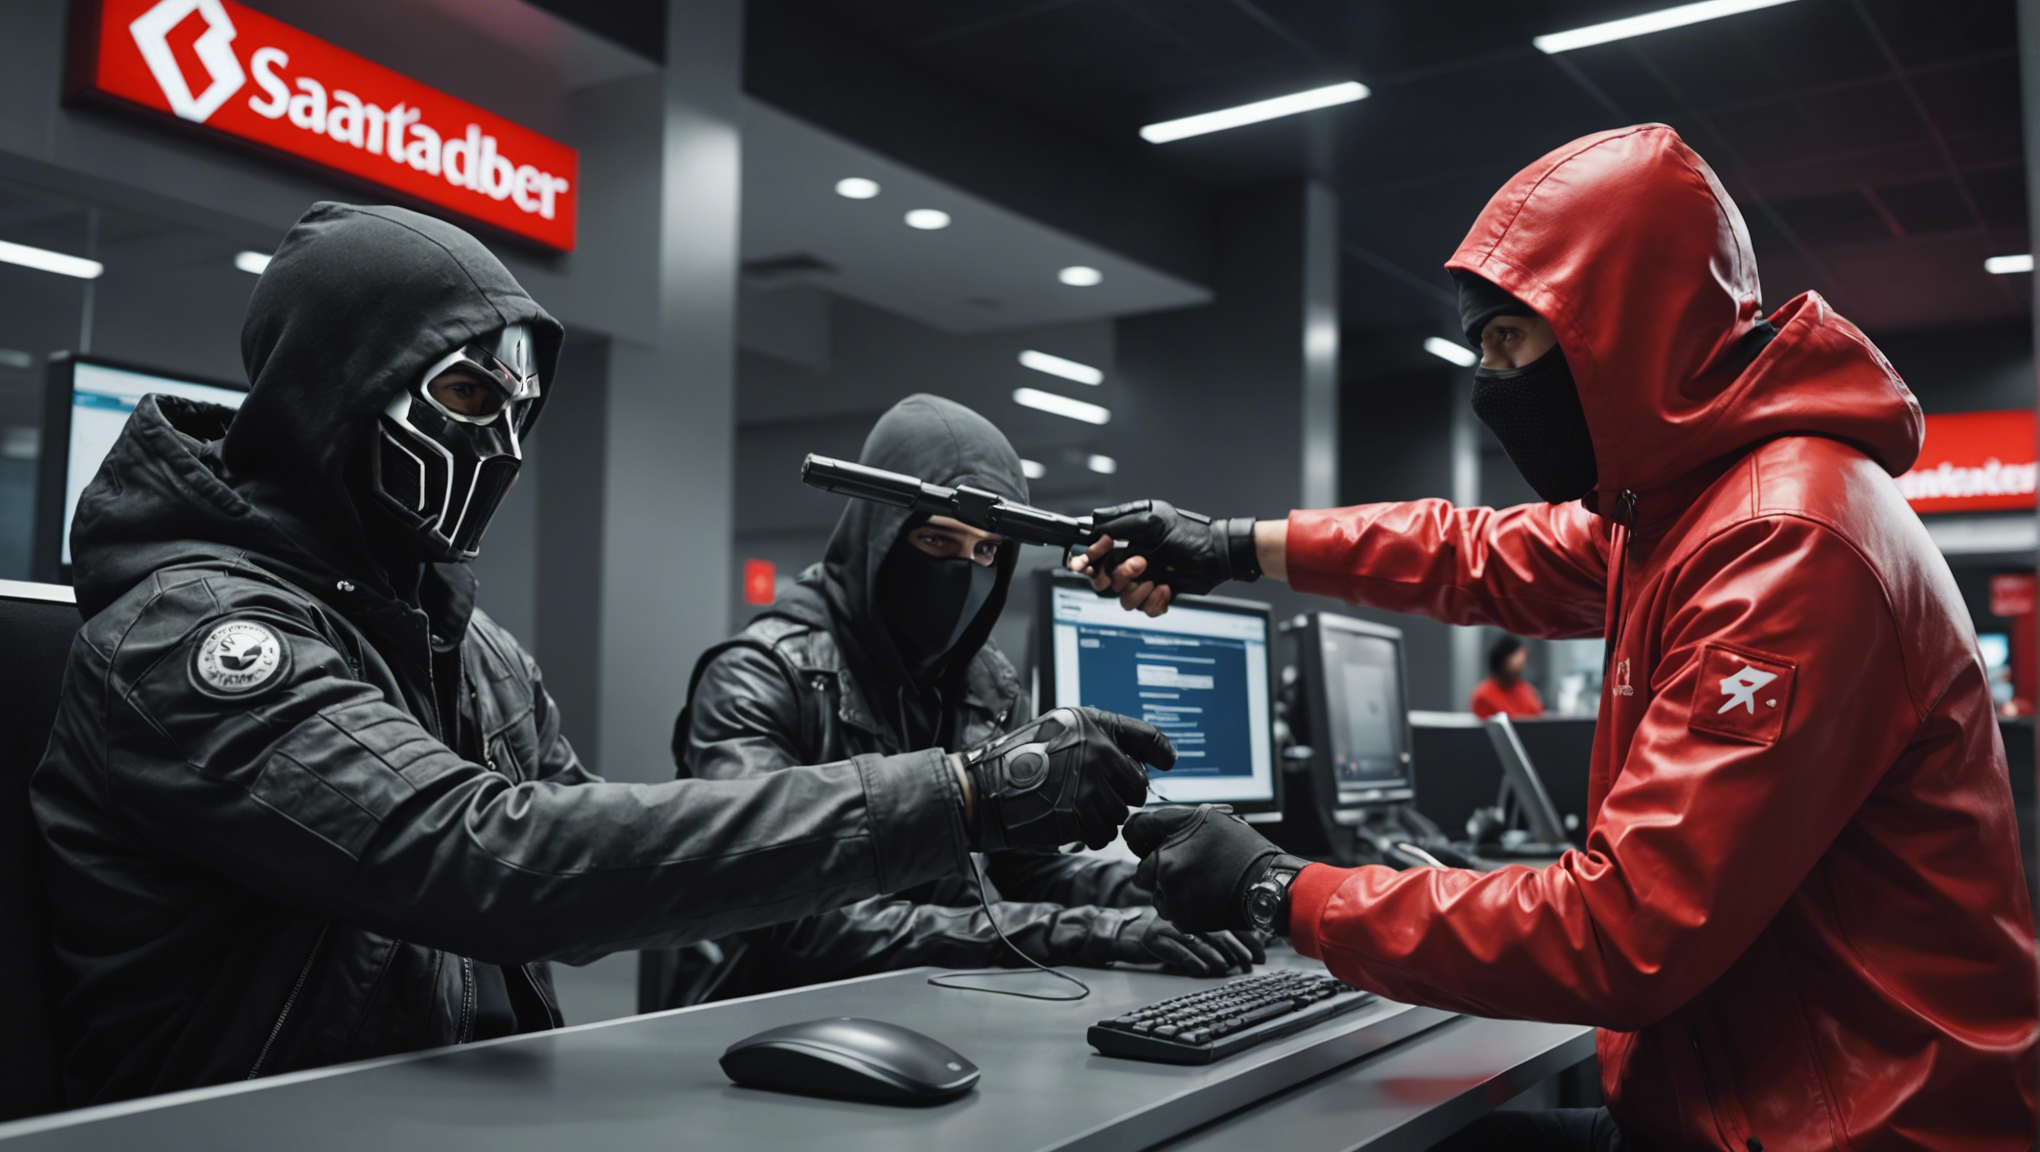 découvrez l'actualité de l'attaque des pirates informatiques contre la banque santander, orchestrée par le groupe shiny hunters.